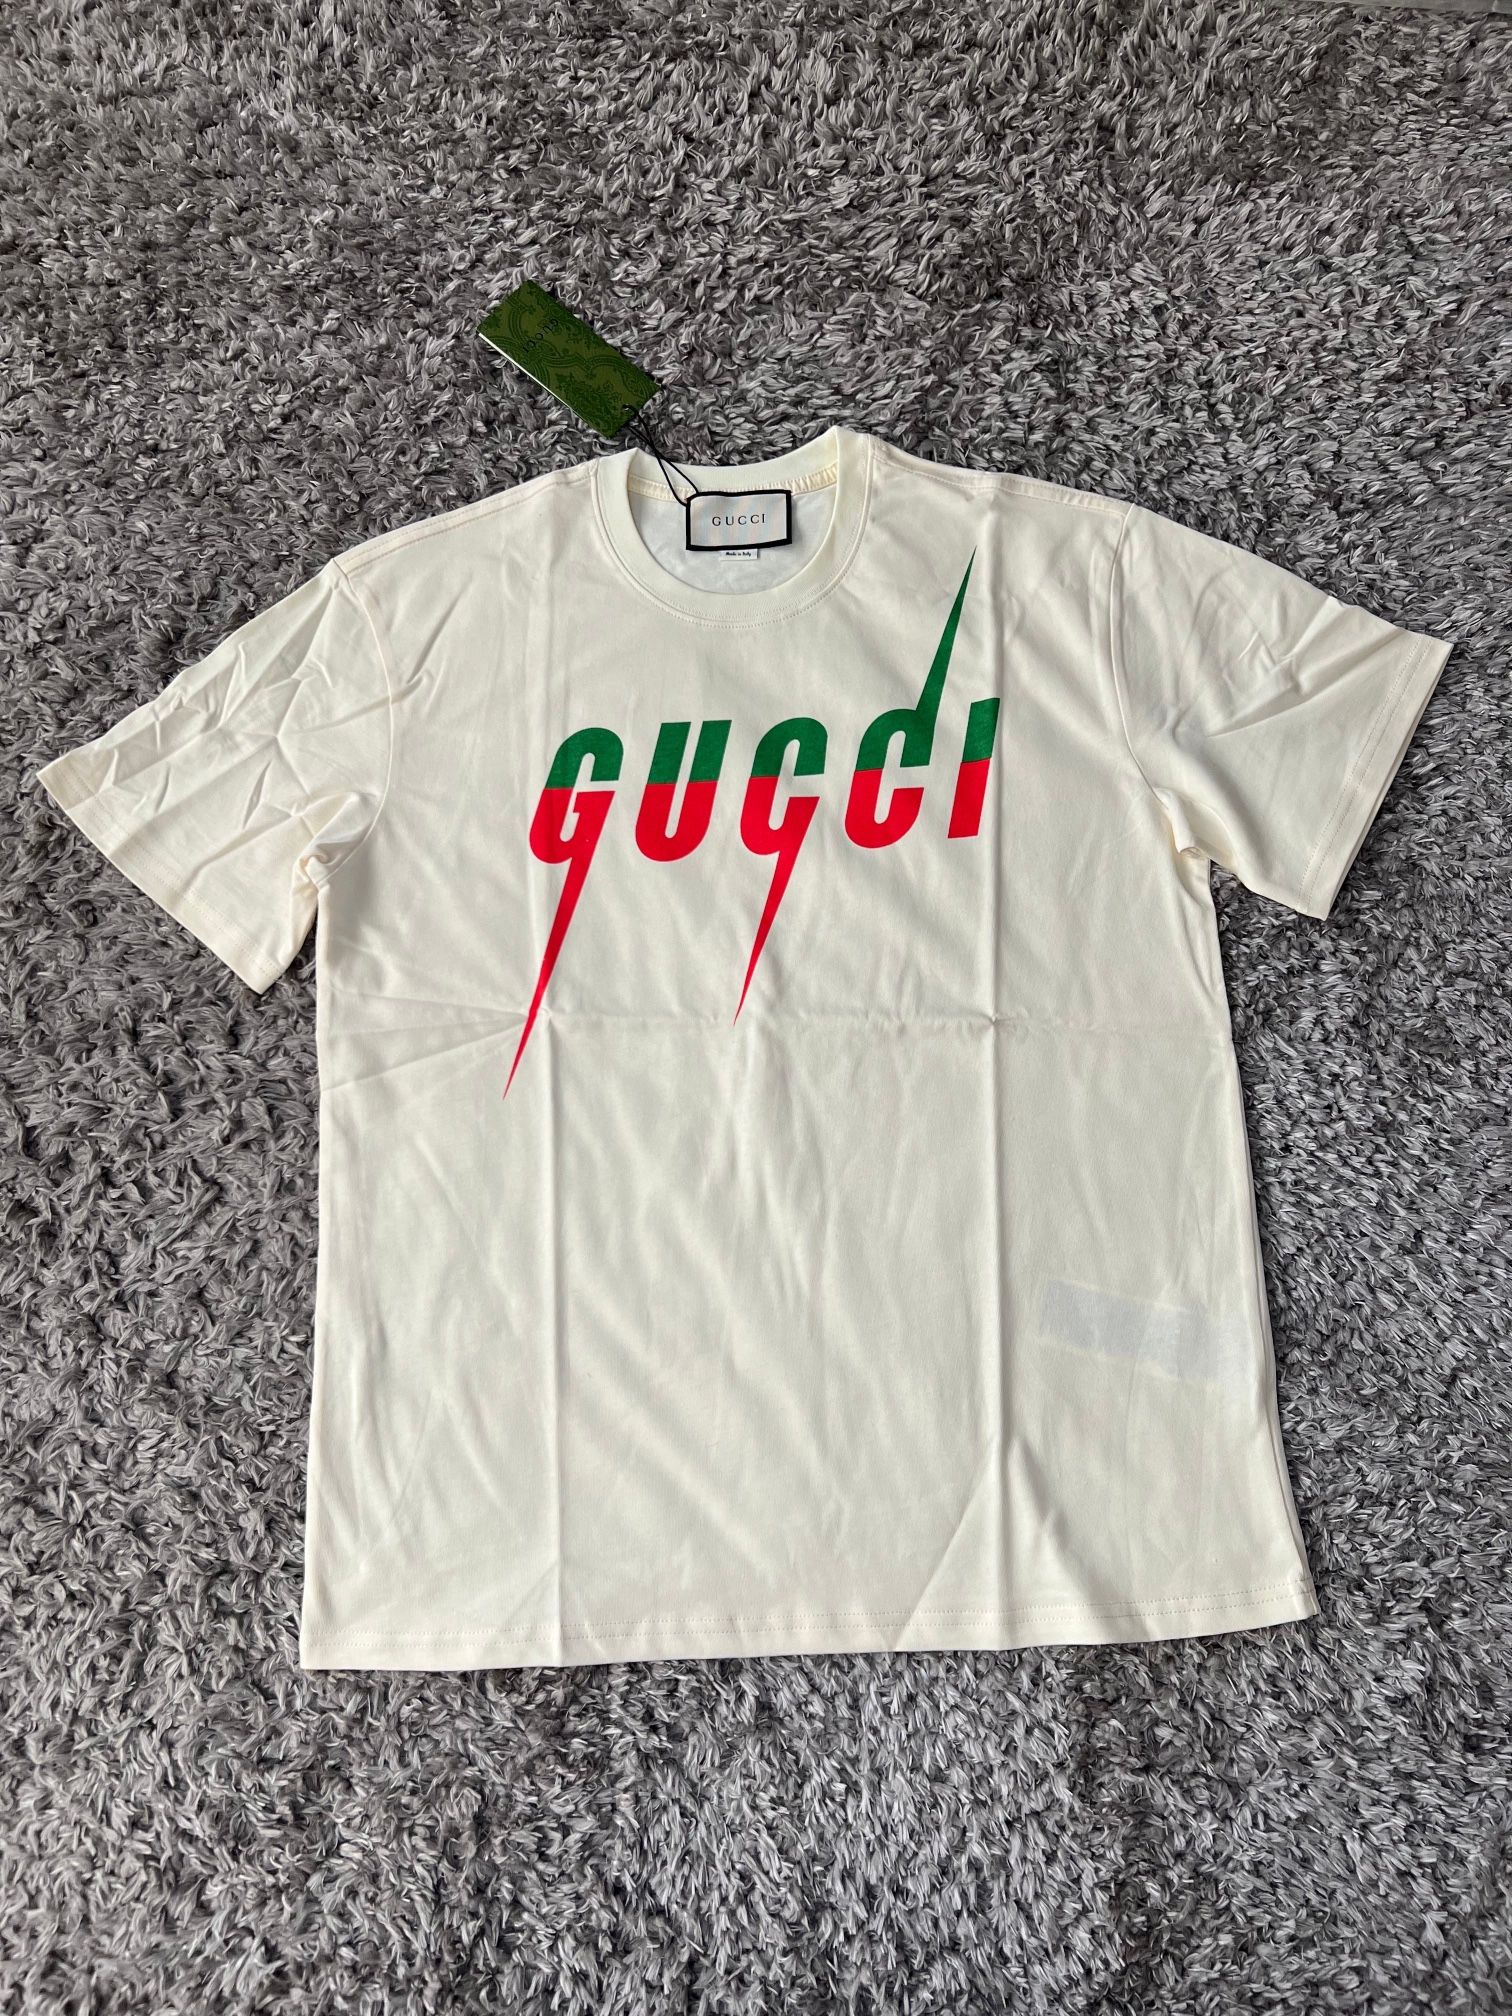 Gucci t shirt sizes availables (S/M, READ THE DESCRIPTION!)